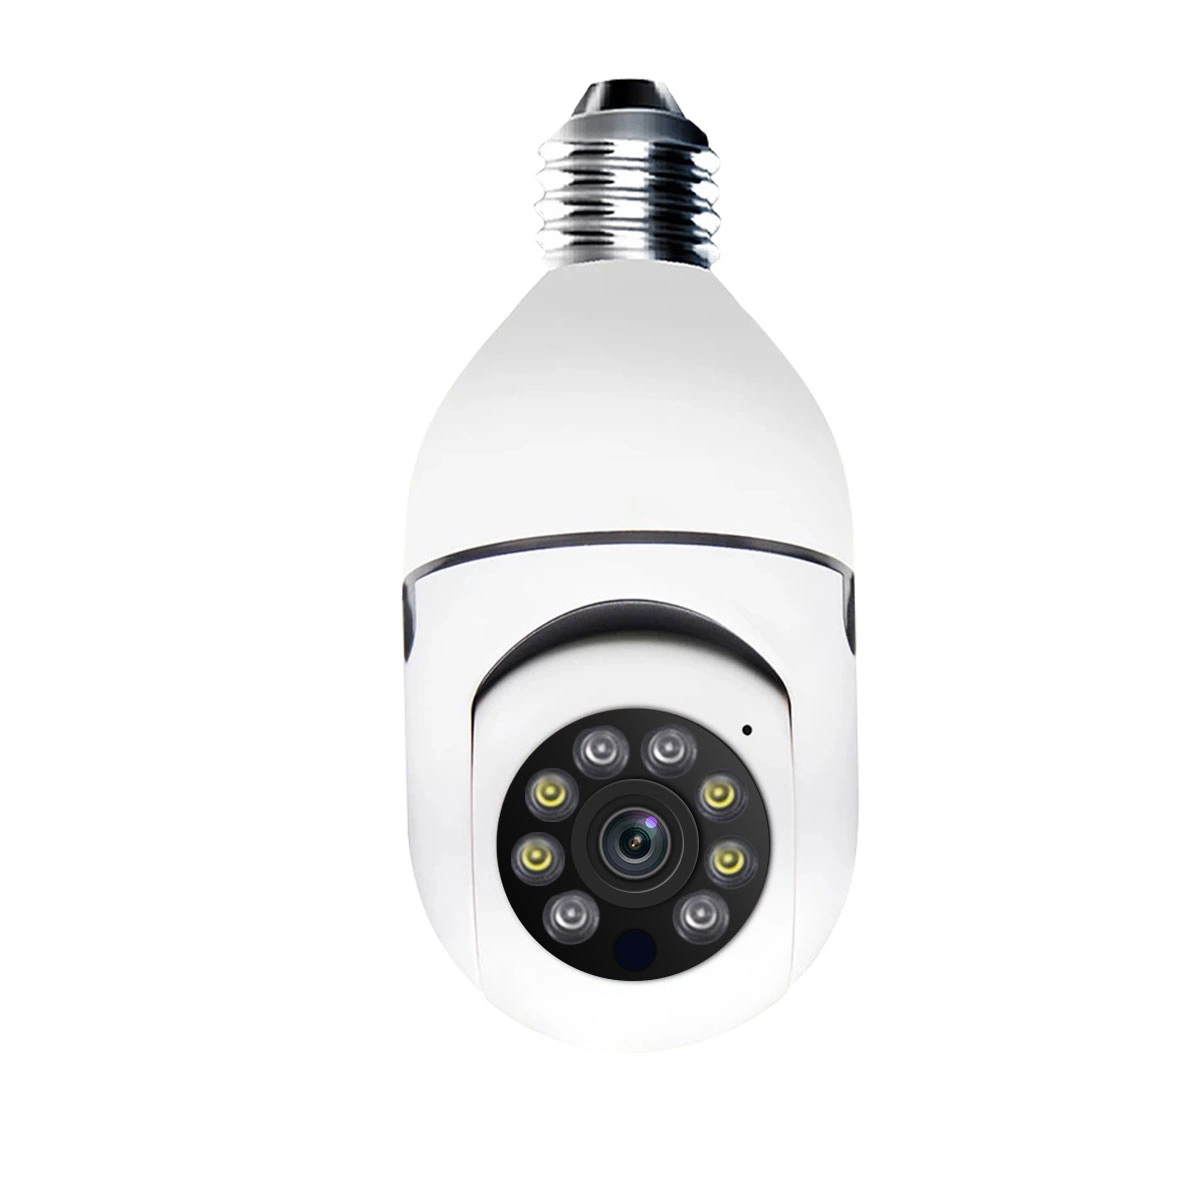 E27 лампы с 4MP поддержки беспроводной связи для Alexa Google Mobile Отслеживание подключений WiFi двунаправленную передачу голосовых интеллектуальный двойной источник света ночного видения камеры